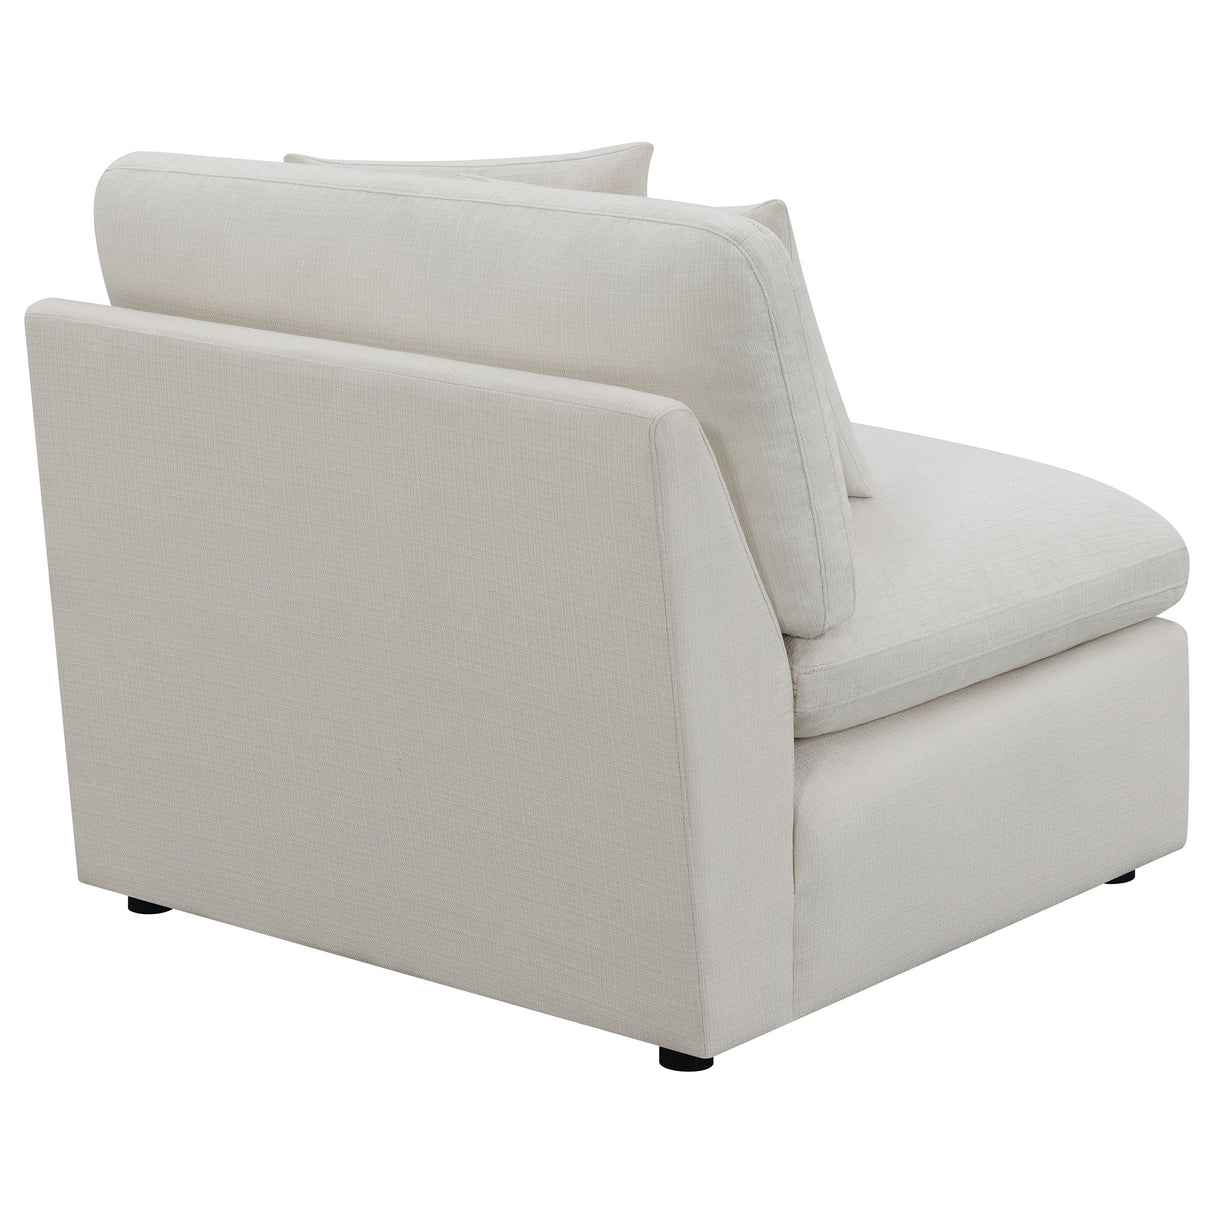 Armless Chair - Hobson Cushion Back Armless Chair Off-White